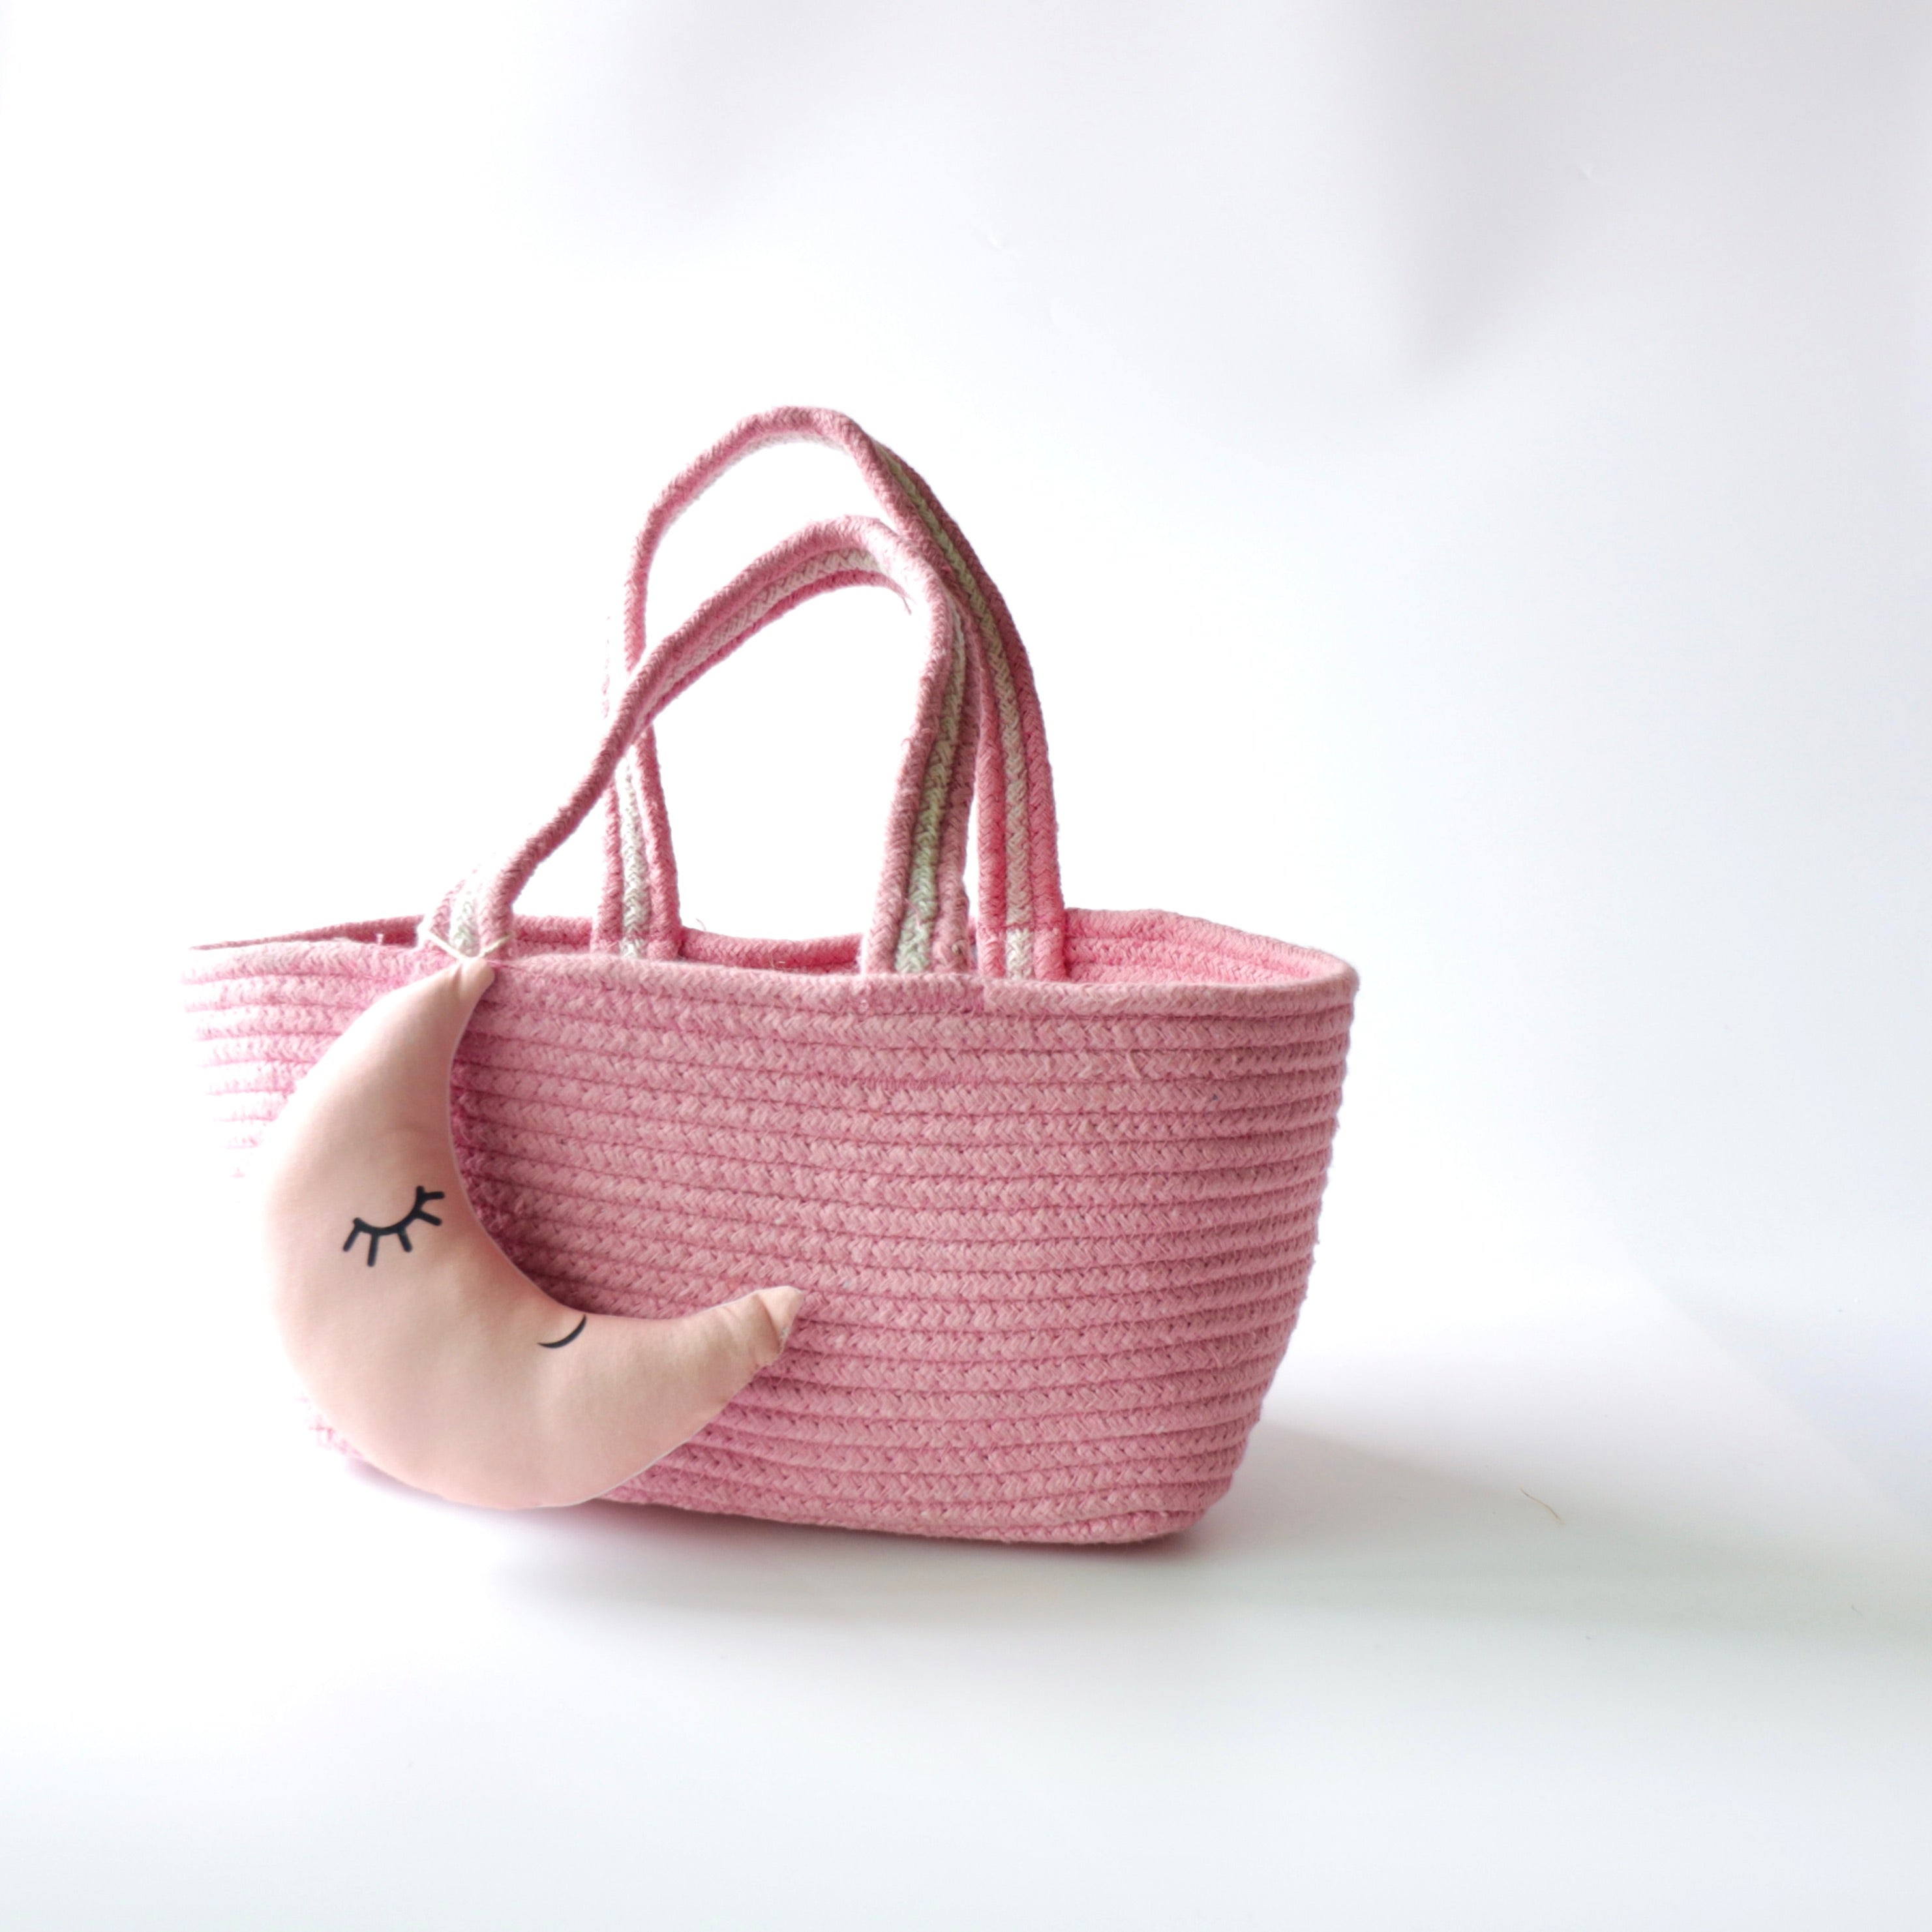 Multipurpose Storage & Gift Basket - Pink (Moon)